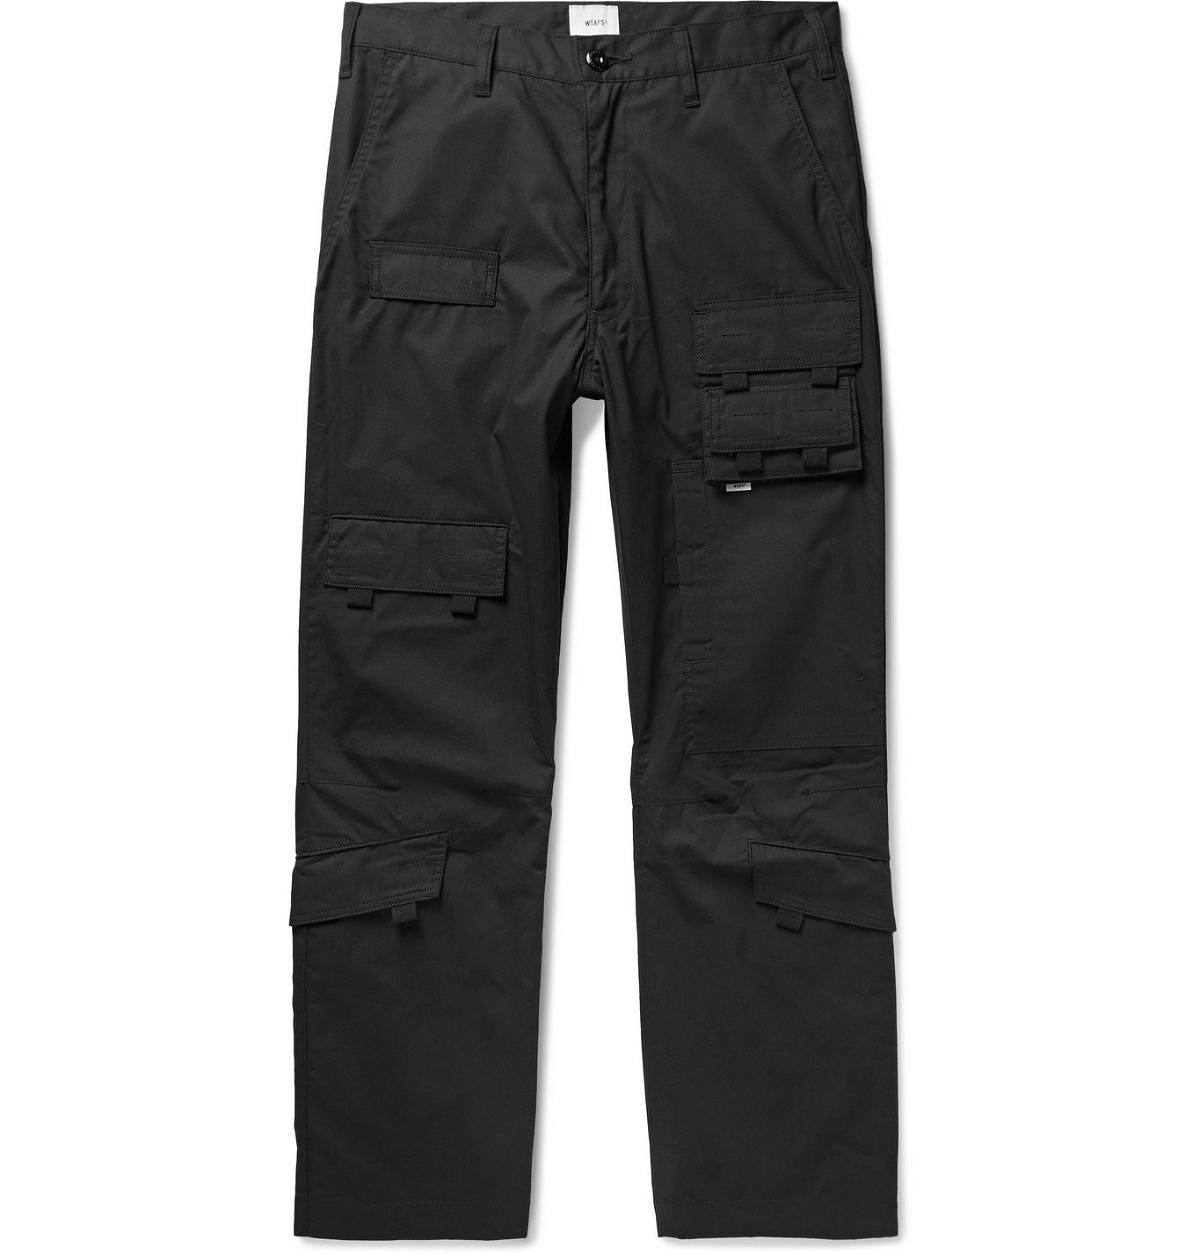 WTAPS - Modular Cotton Cargo Trousers - Black WTAPS